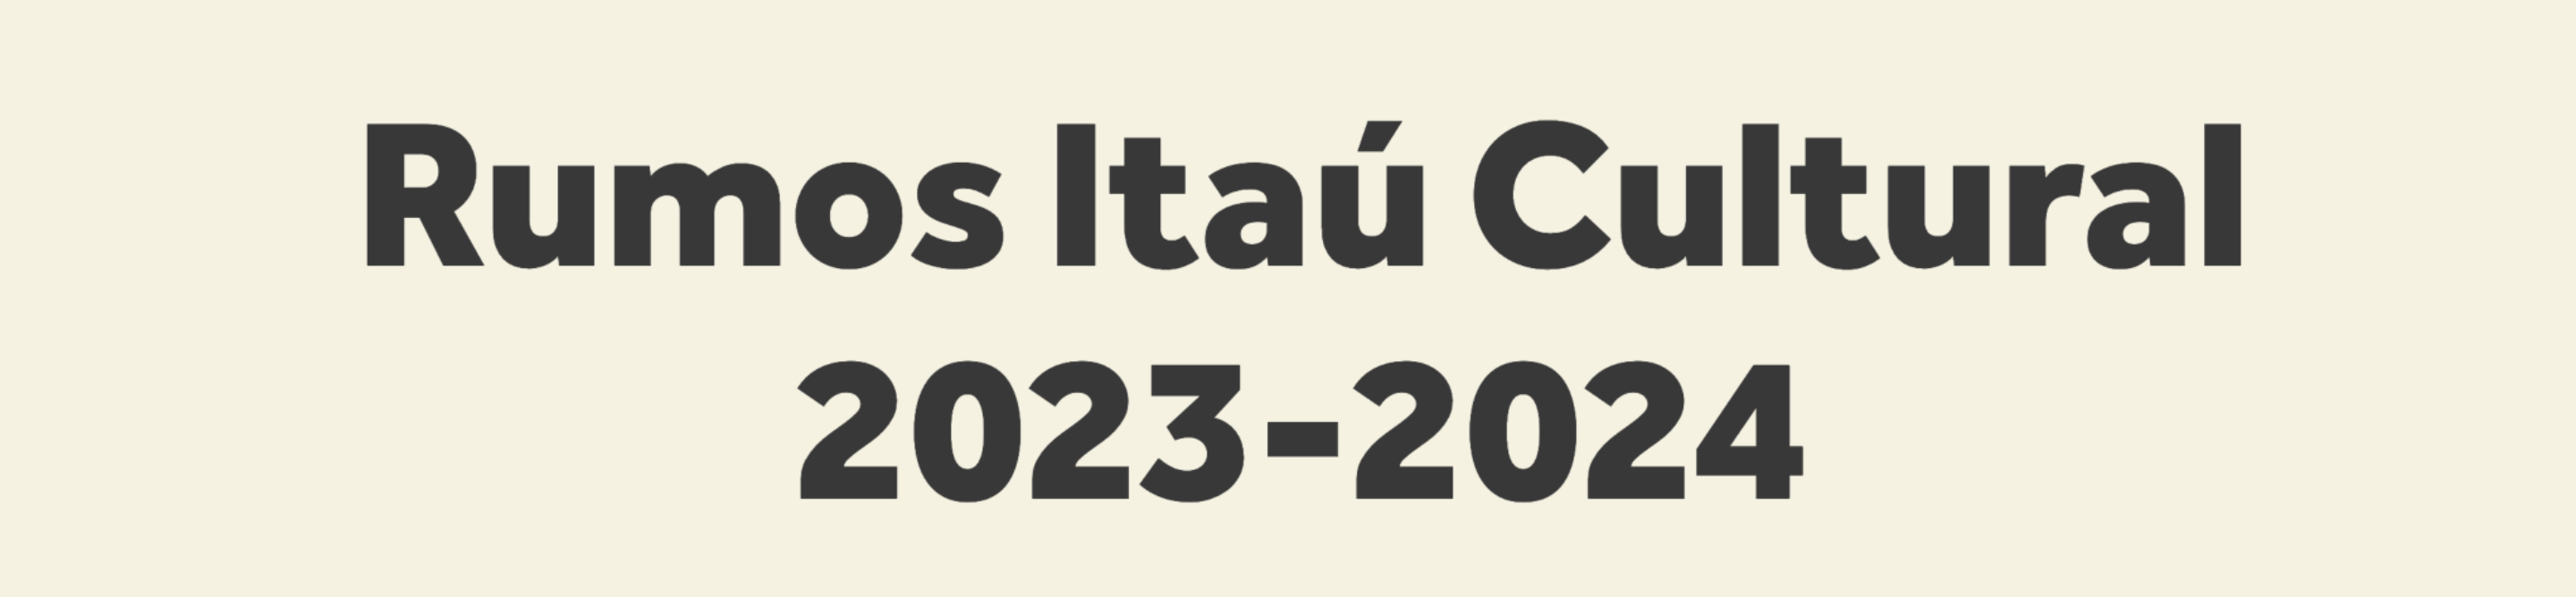 Rumos Itaú Cultural 2023-2024